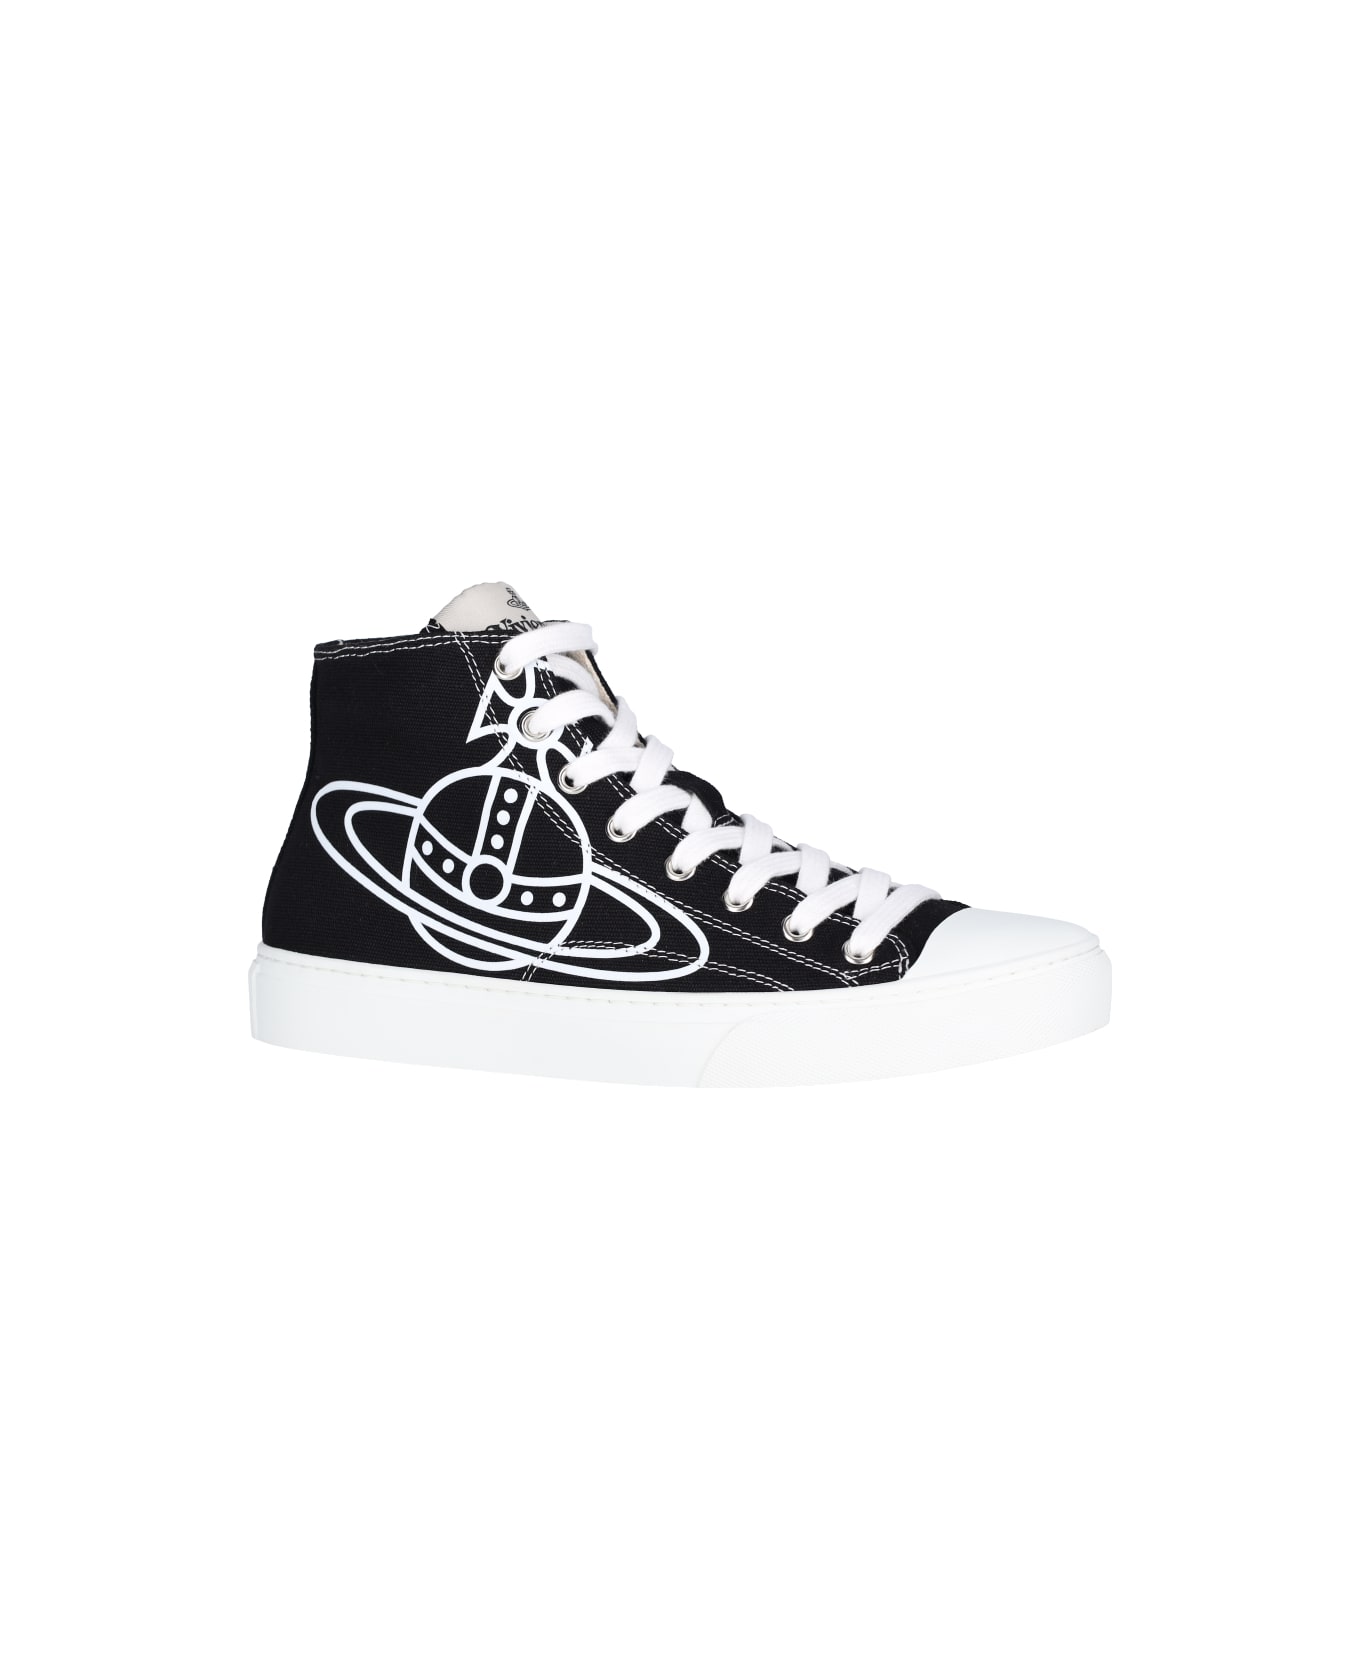 Vivienne Westwood "plimsoll High" Sneakers - Black   スニーカー